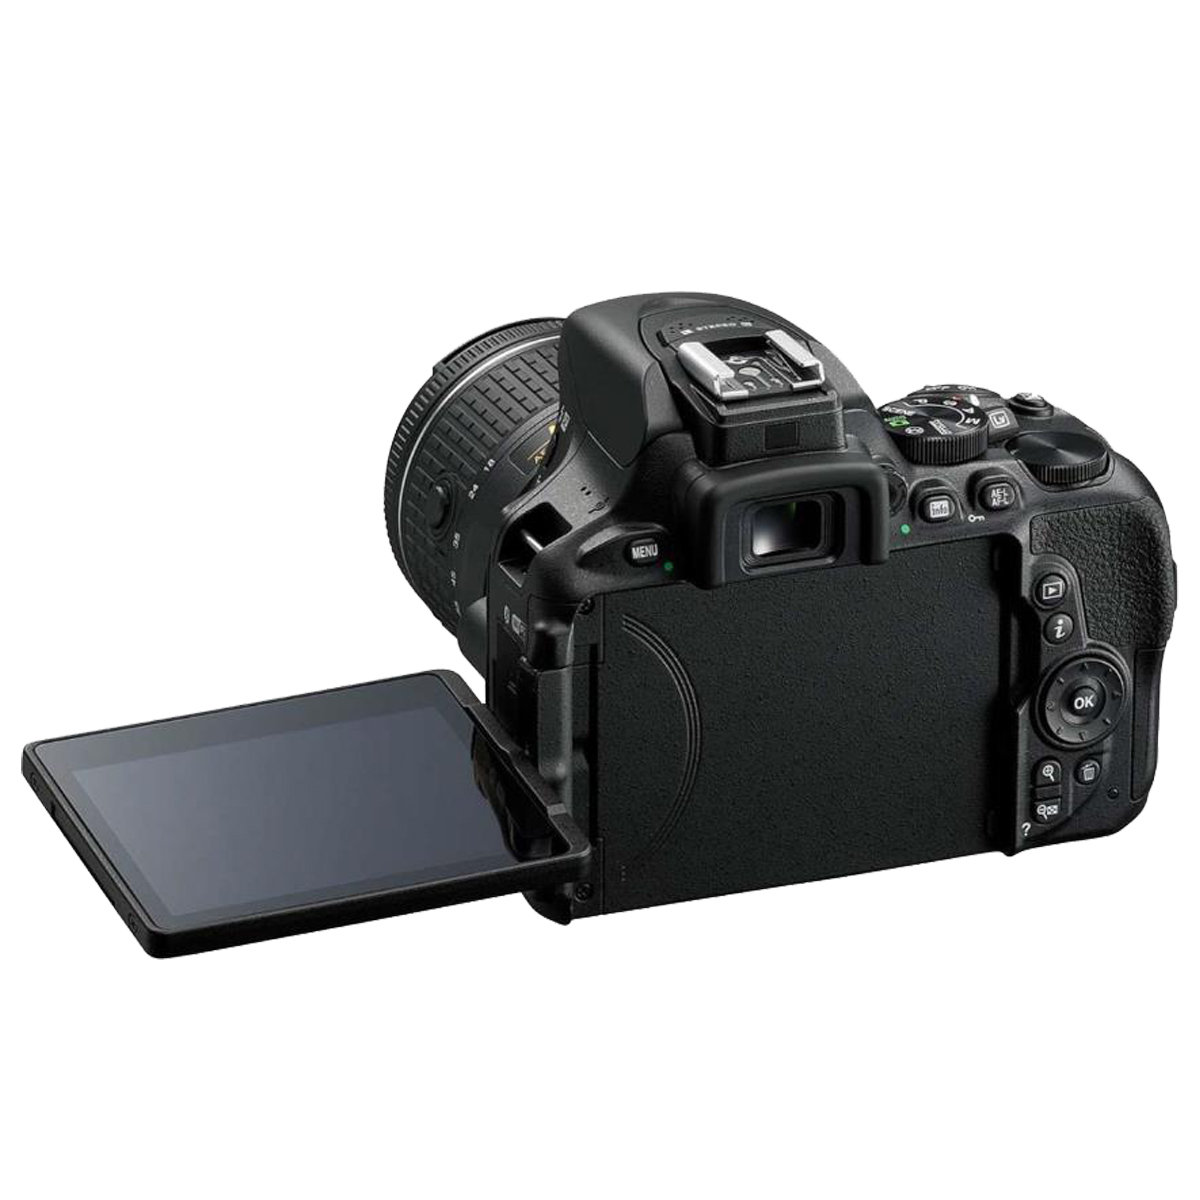 Spiegelreflexkamera VR Black, DSLR-Kamera 18-55 Objektiv WLAN- LCD, + mm AF-P f/3.5-5.6G NIKON D5600